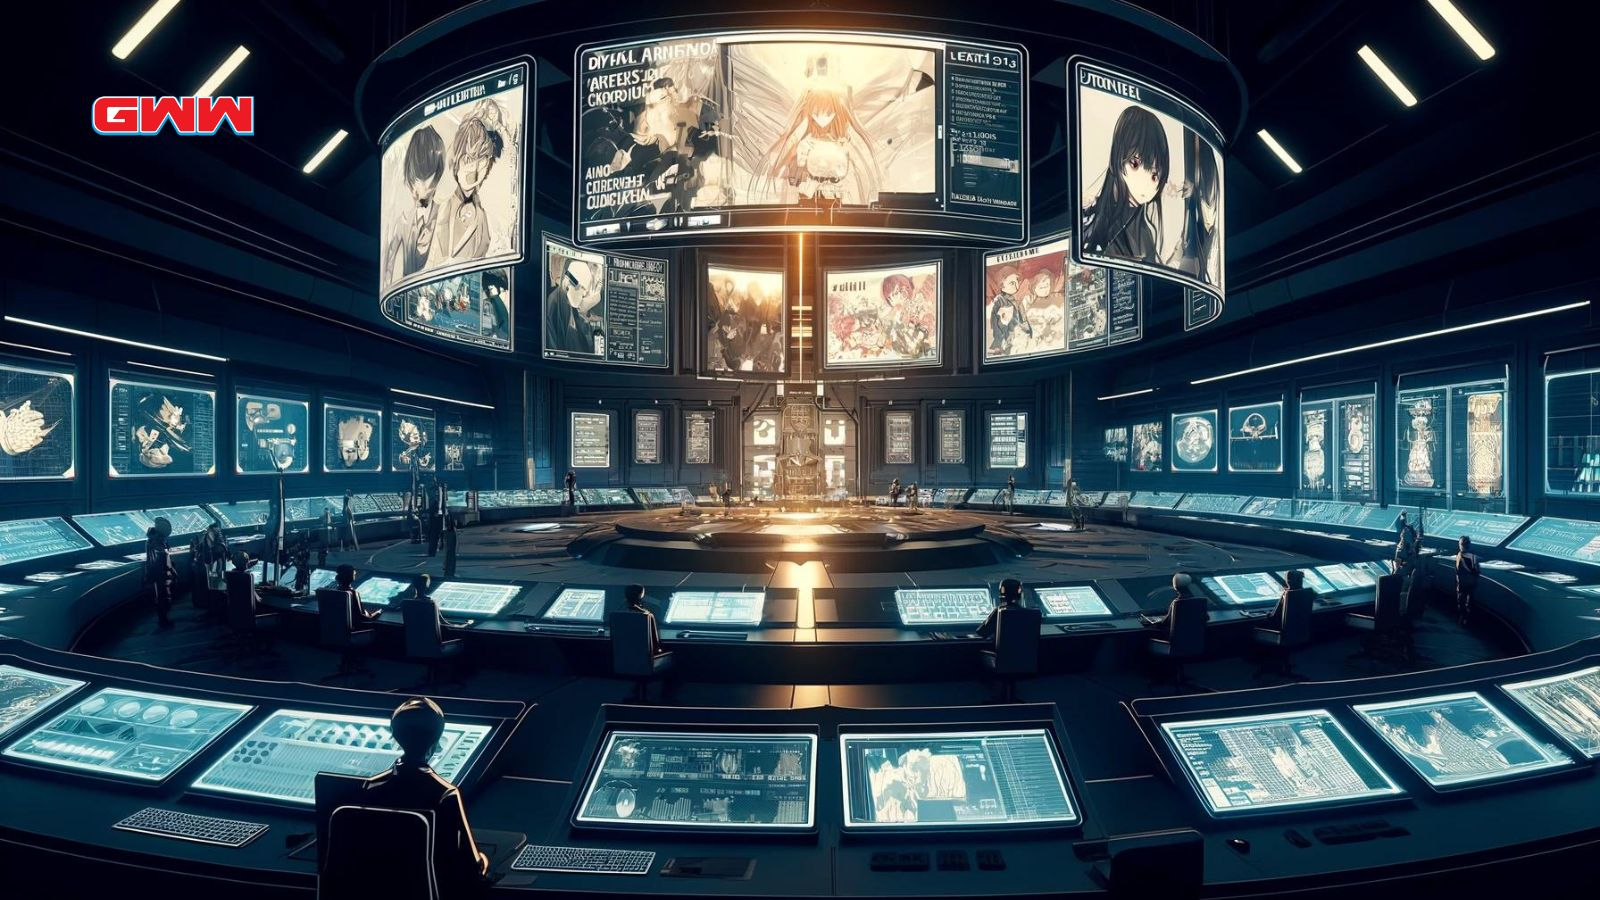 A high-tech digital command center themed around the website Anime-Planet.com